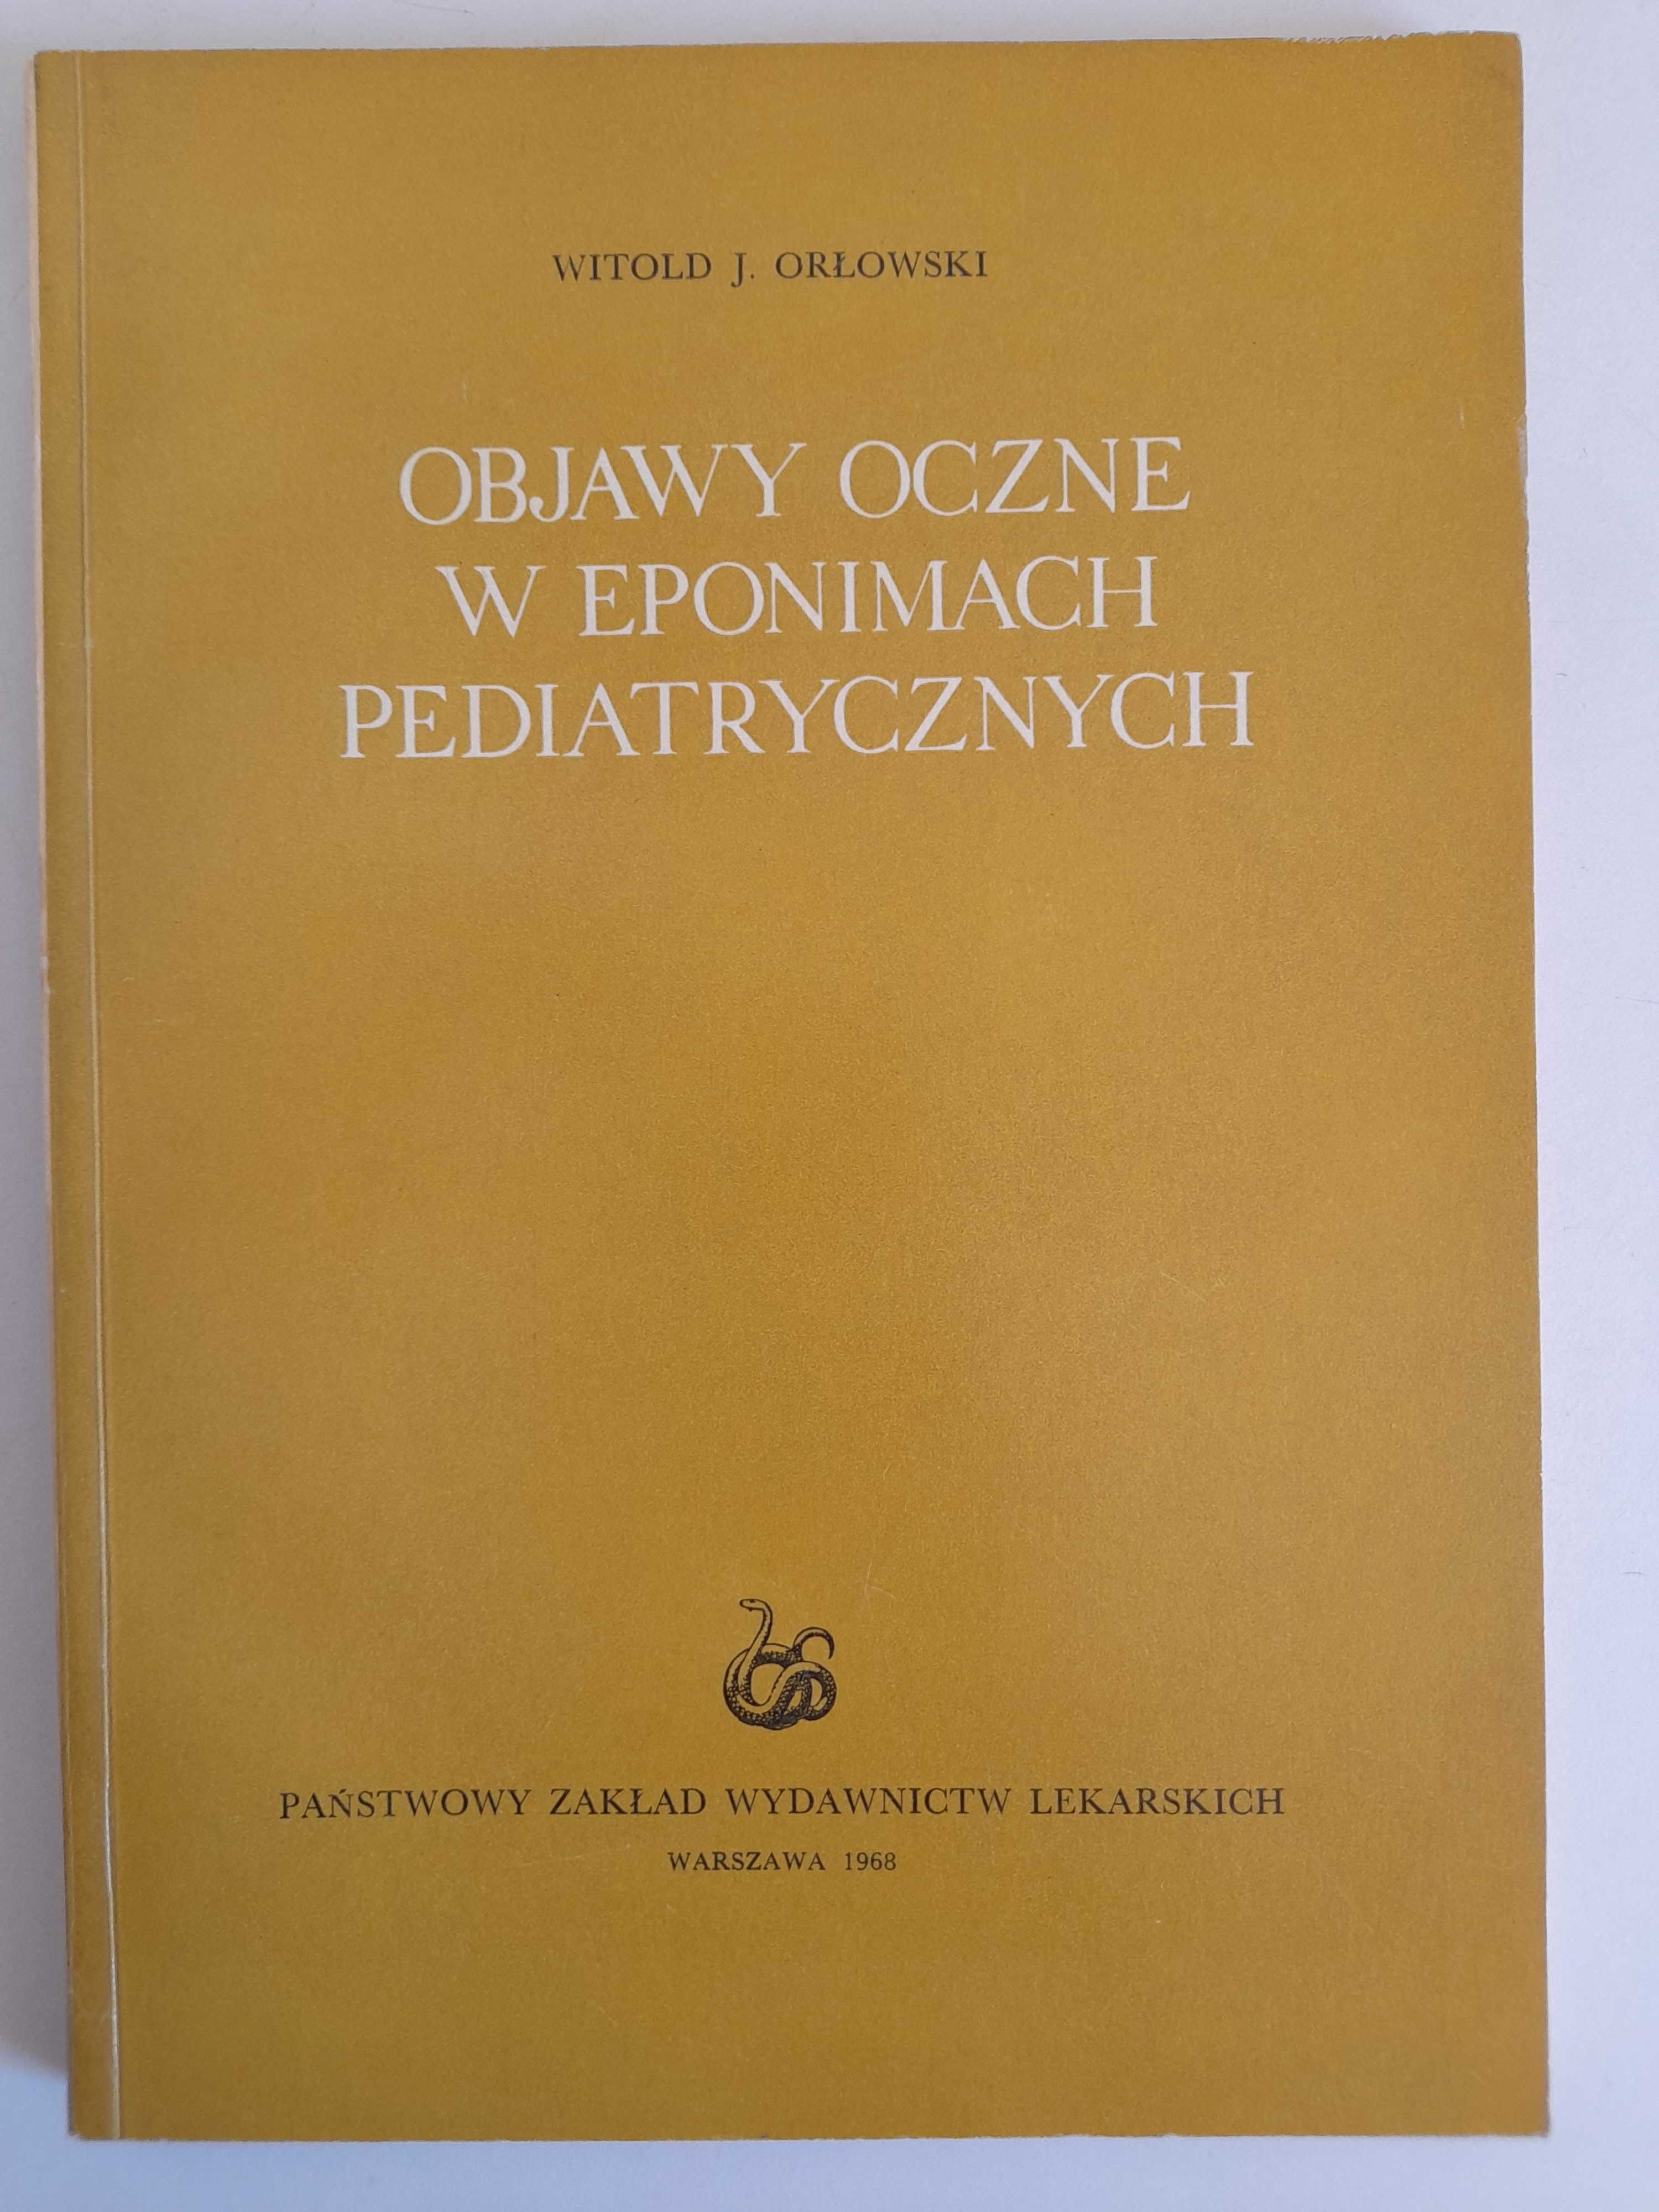 Objawy oczne w eponimach pediatrycznych - W Orłowski